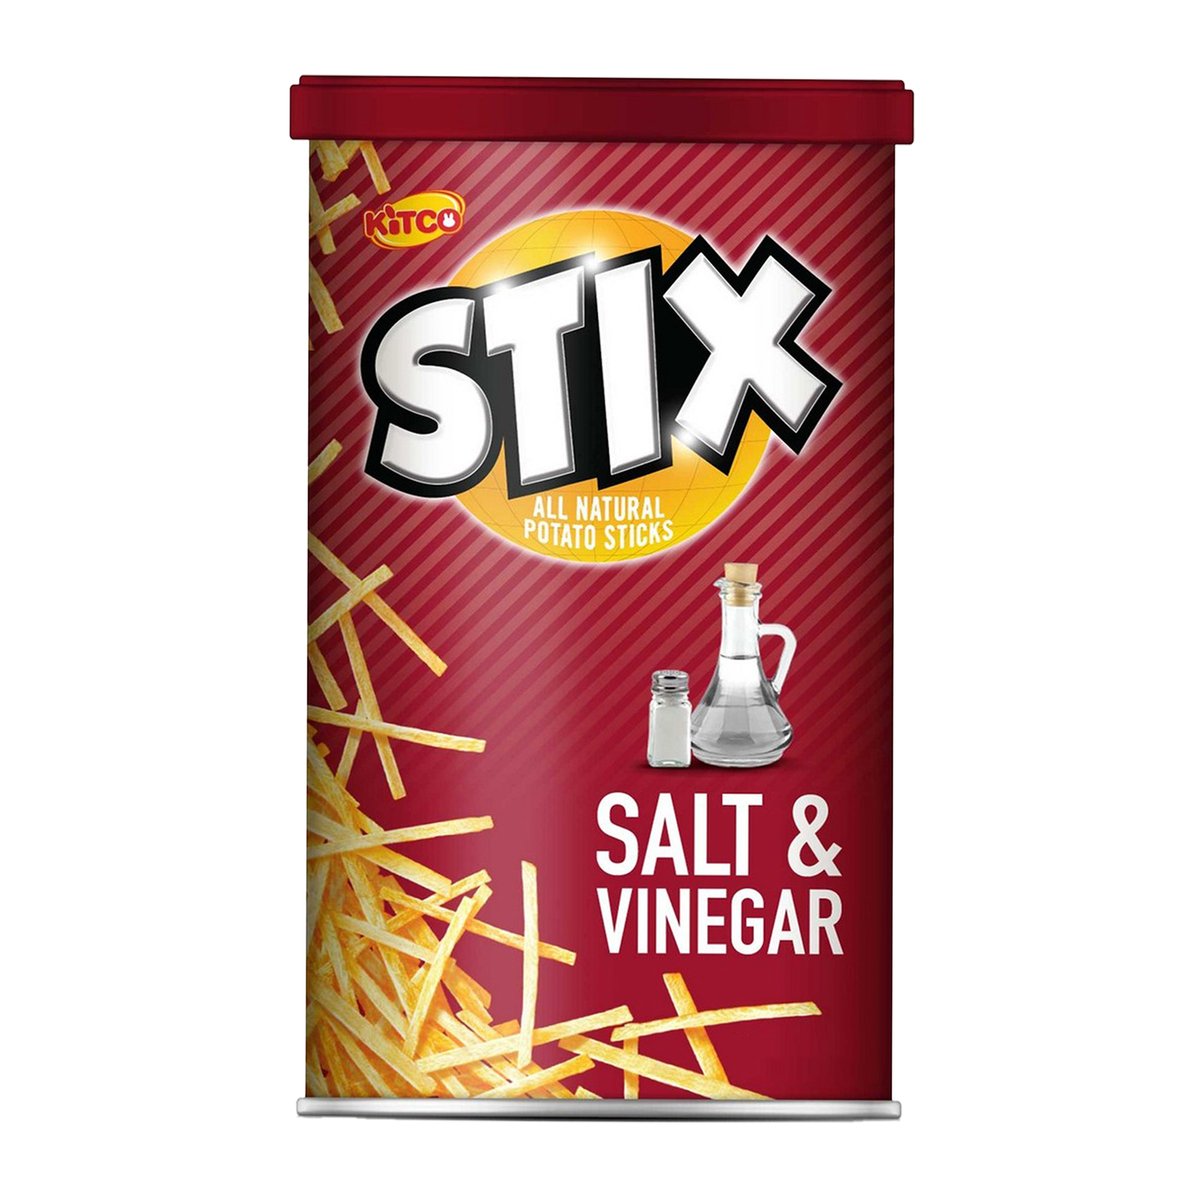 كيتكو ستيكس أصابع بطاطس بنكهة الملح والخل 40 جم × 6